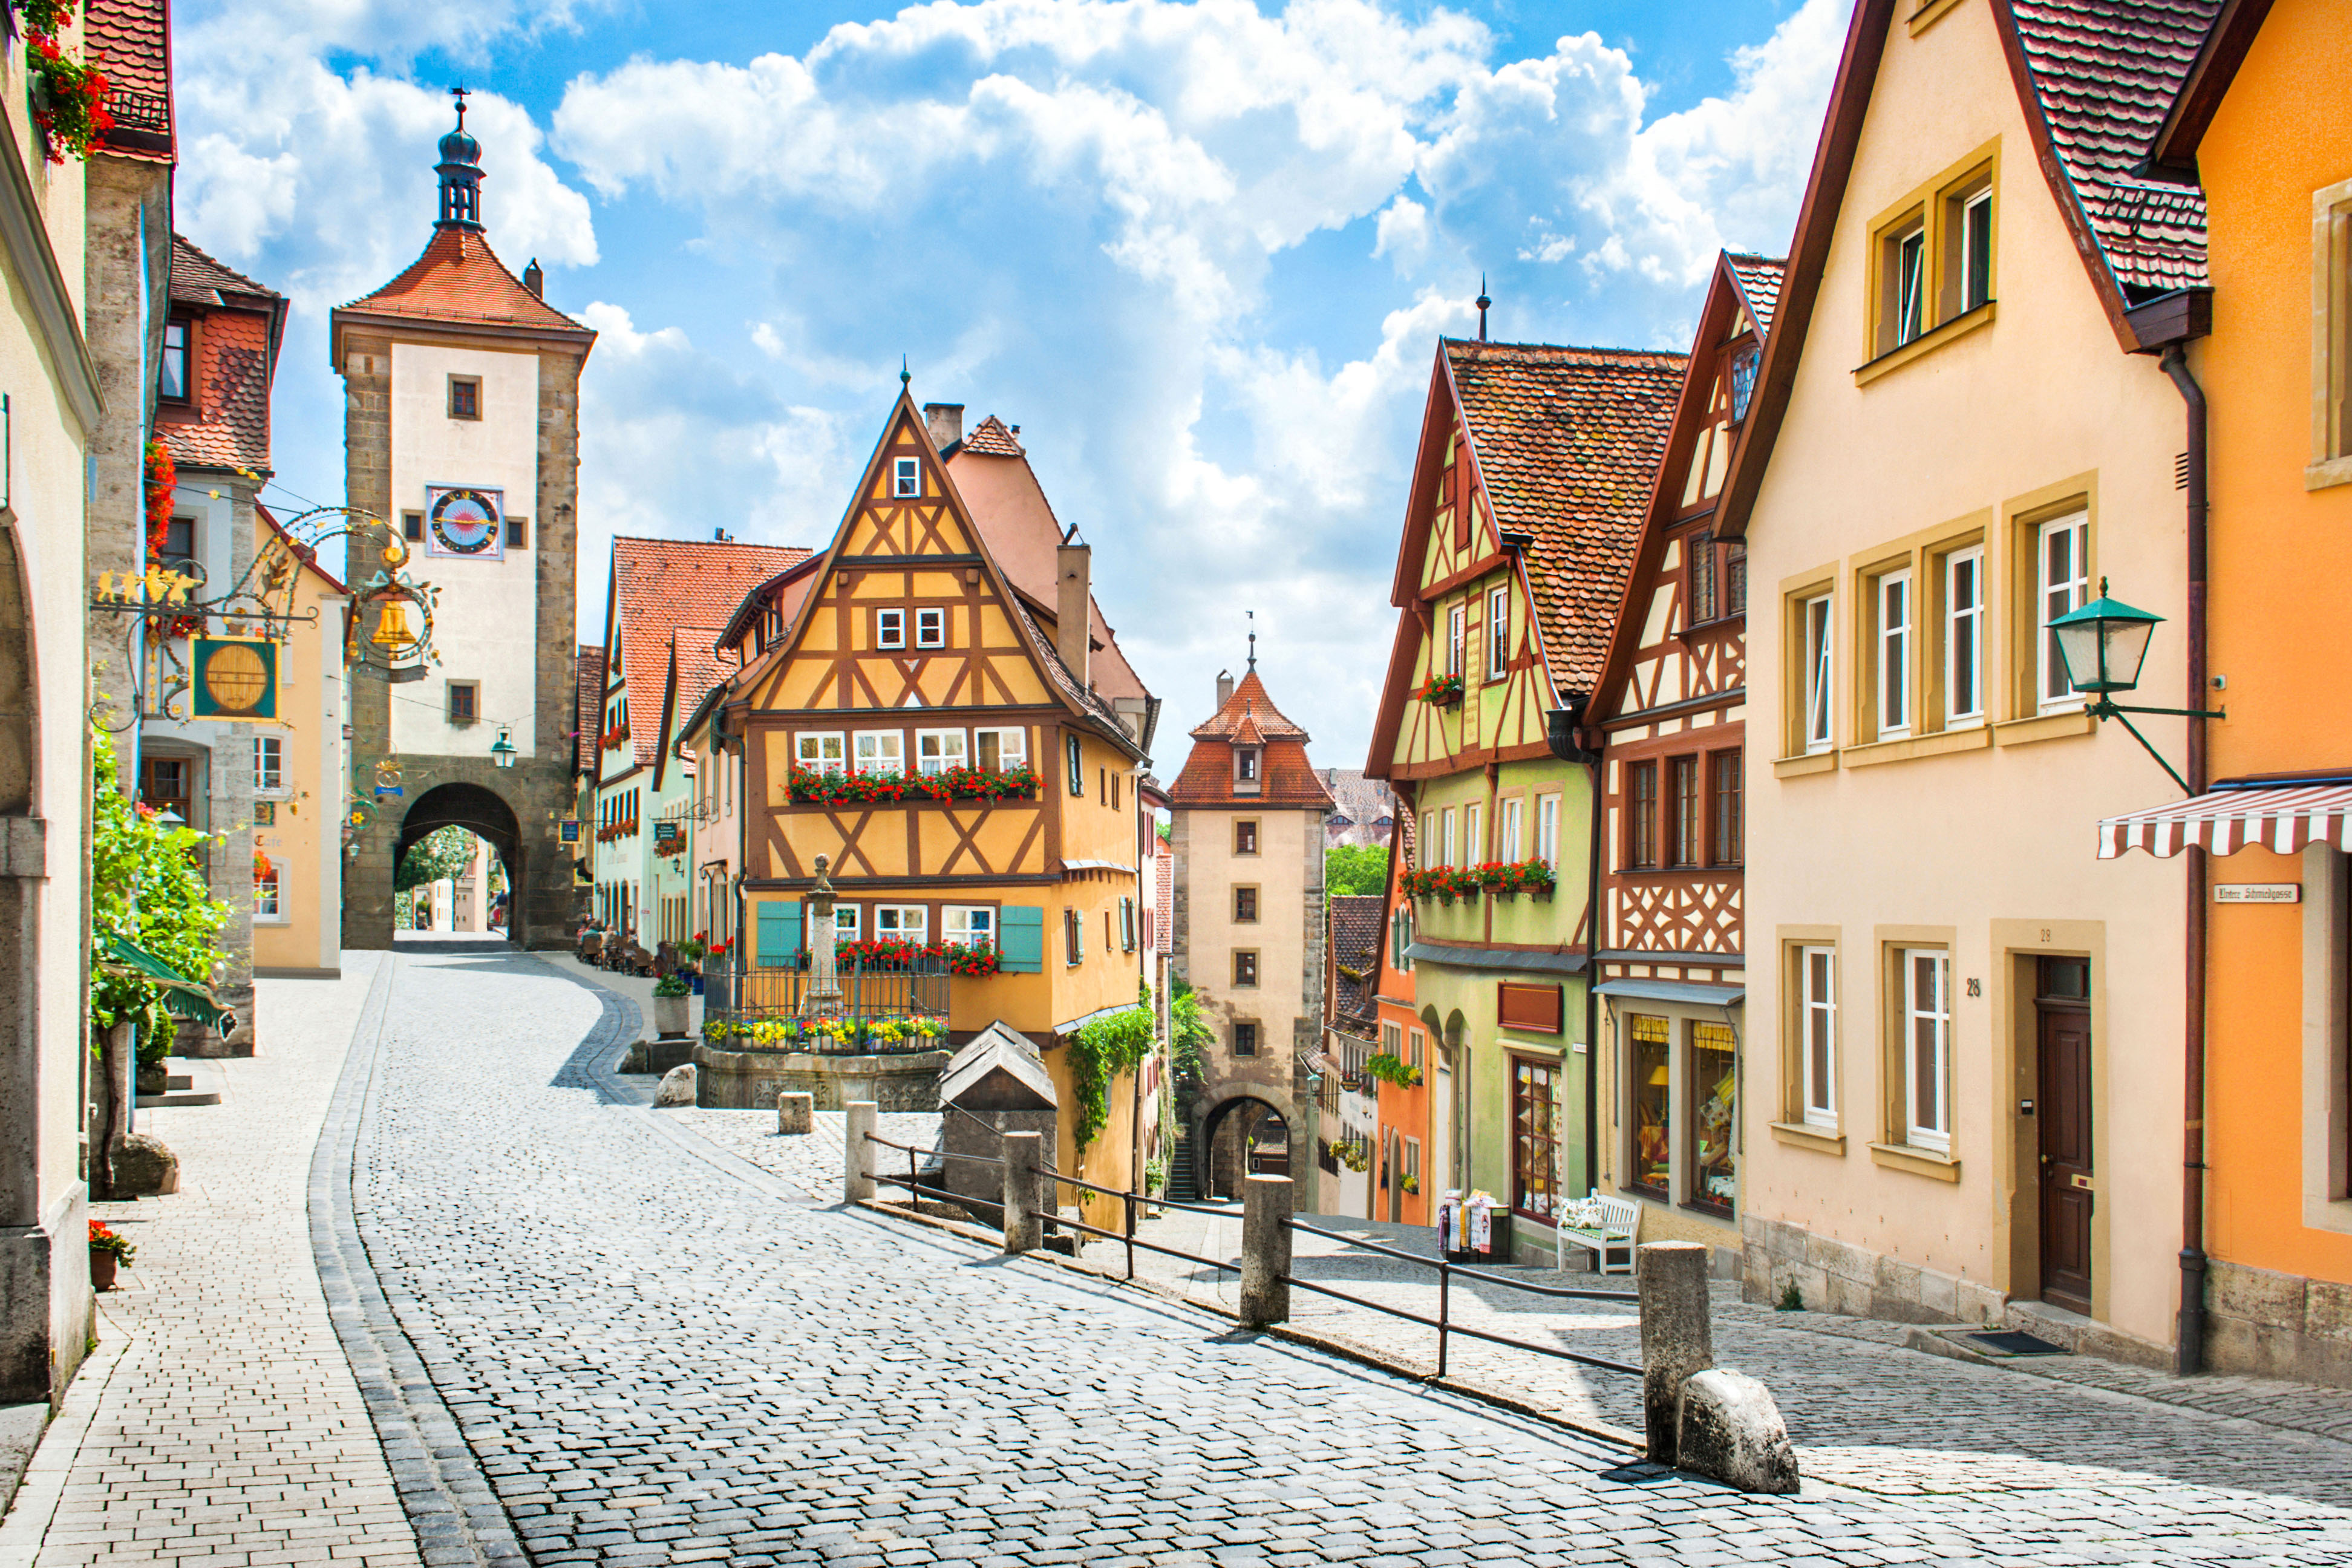 Quer voltar ao passado medieval? Então o destino é Rothenburg, com suas ruelas estreitas calçadas de pedras e muitas torres que se erguem no horizonte / GB Imagem